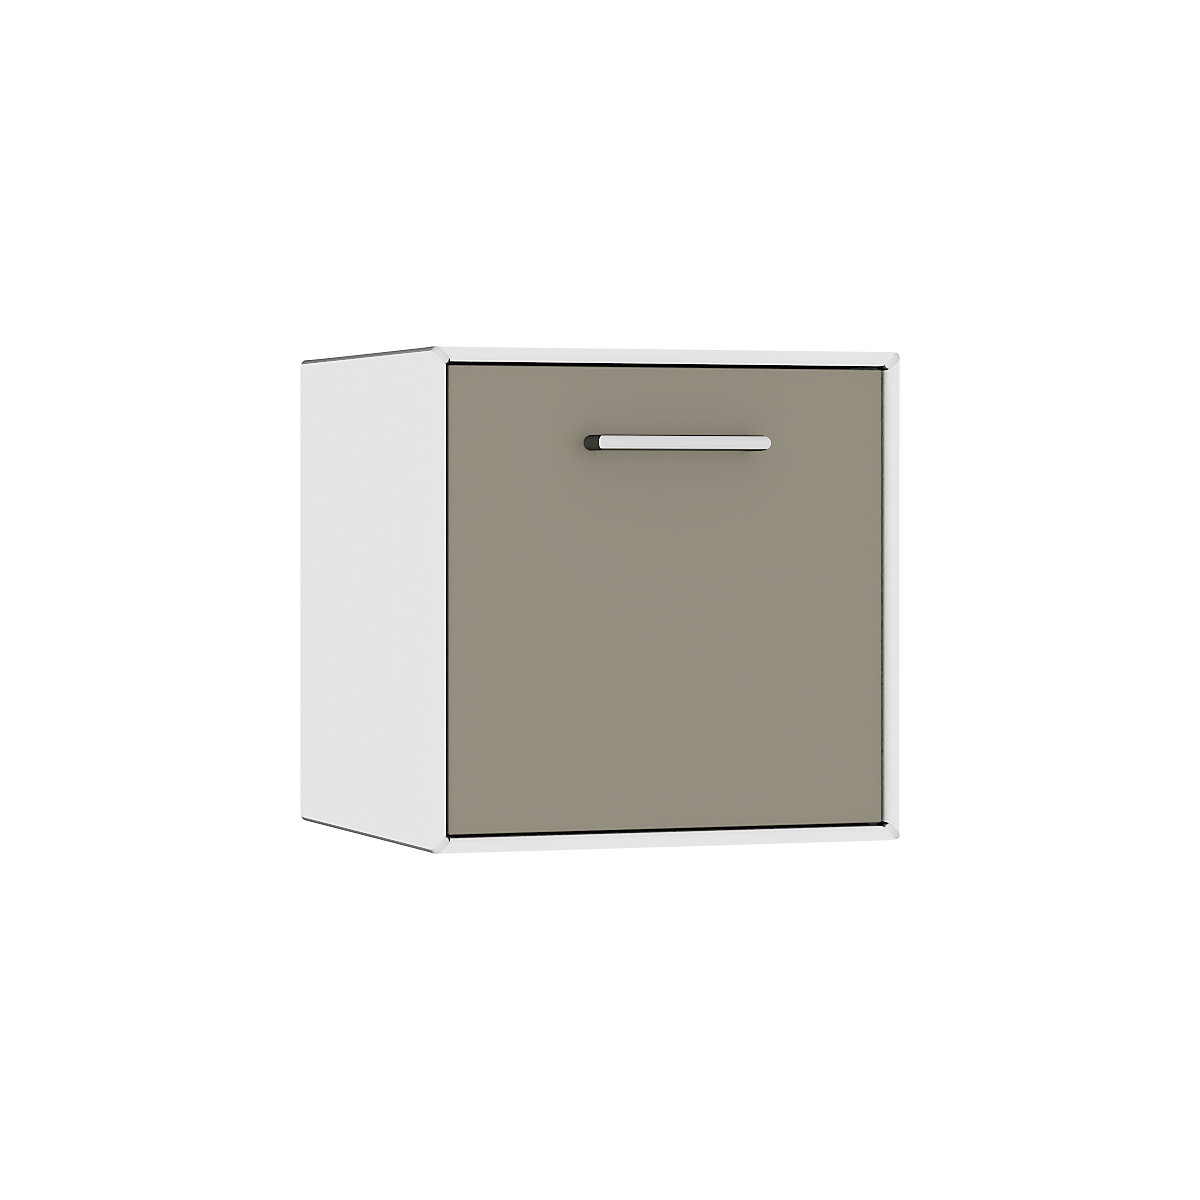 Viseča enojna omarica – mauser, 1 vrata predala za bar, širina 385 mm, čisto bele / beige sive barve-5